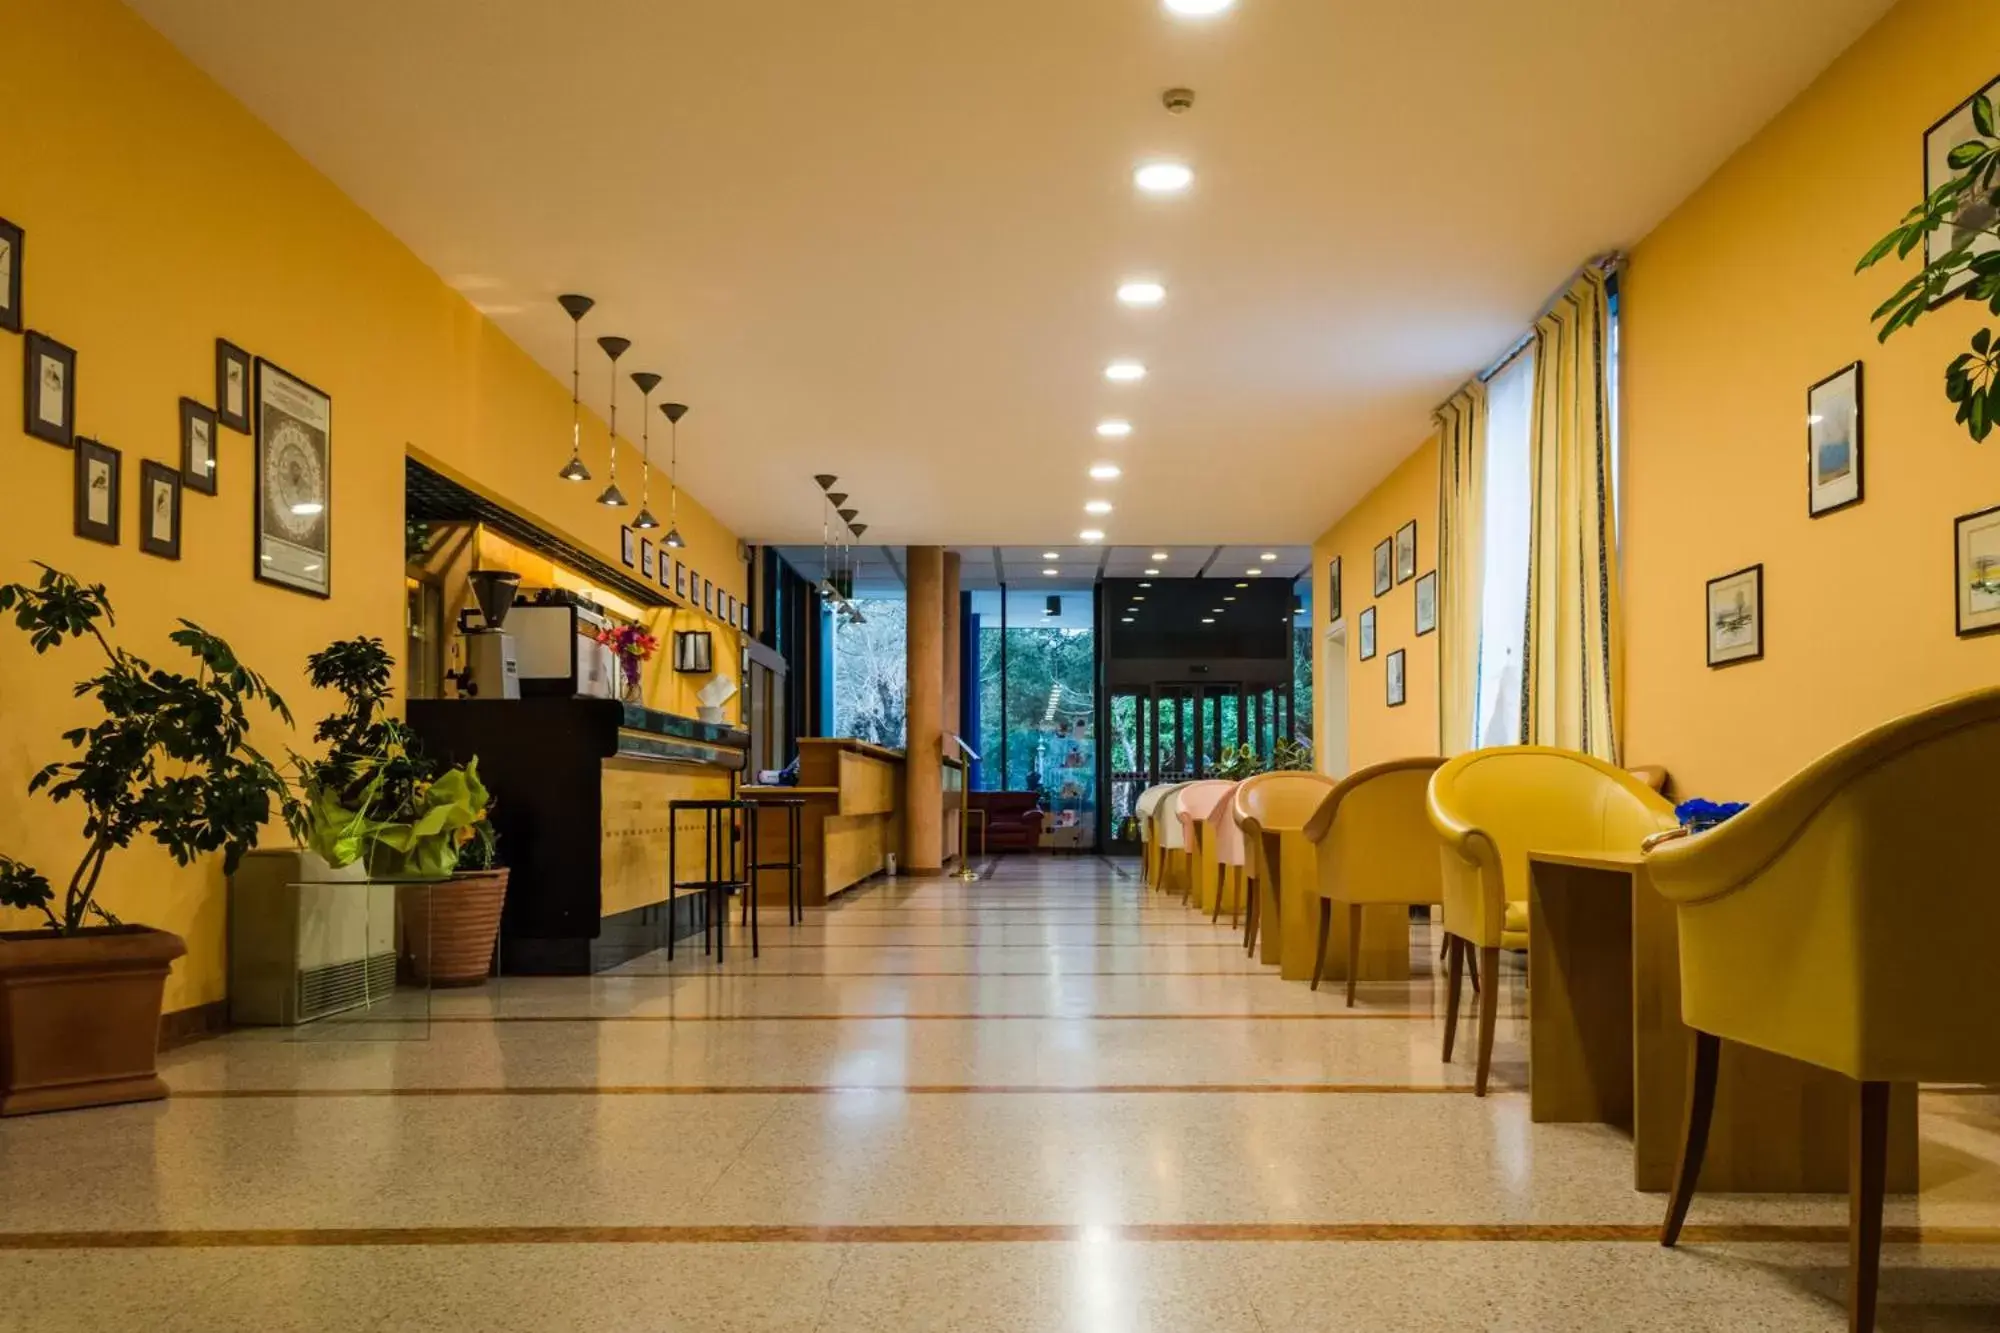 Lobby or reception in Hotel Terme di Castel San Pietro